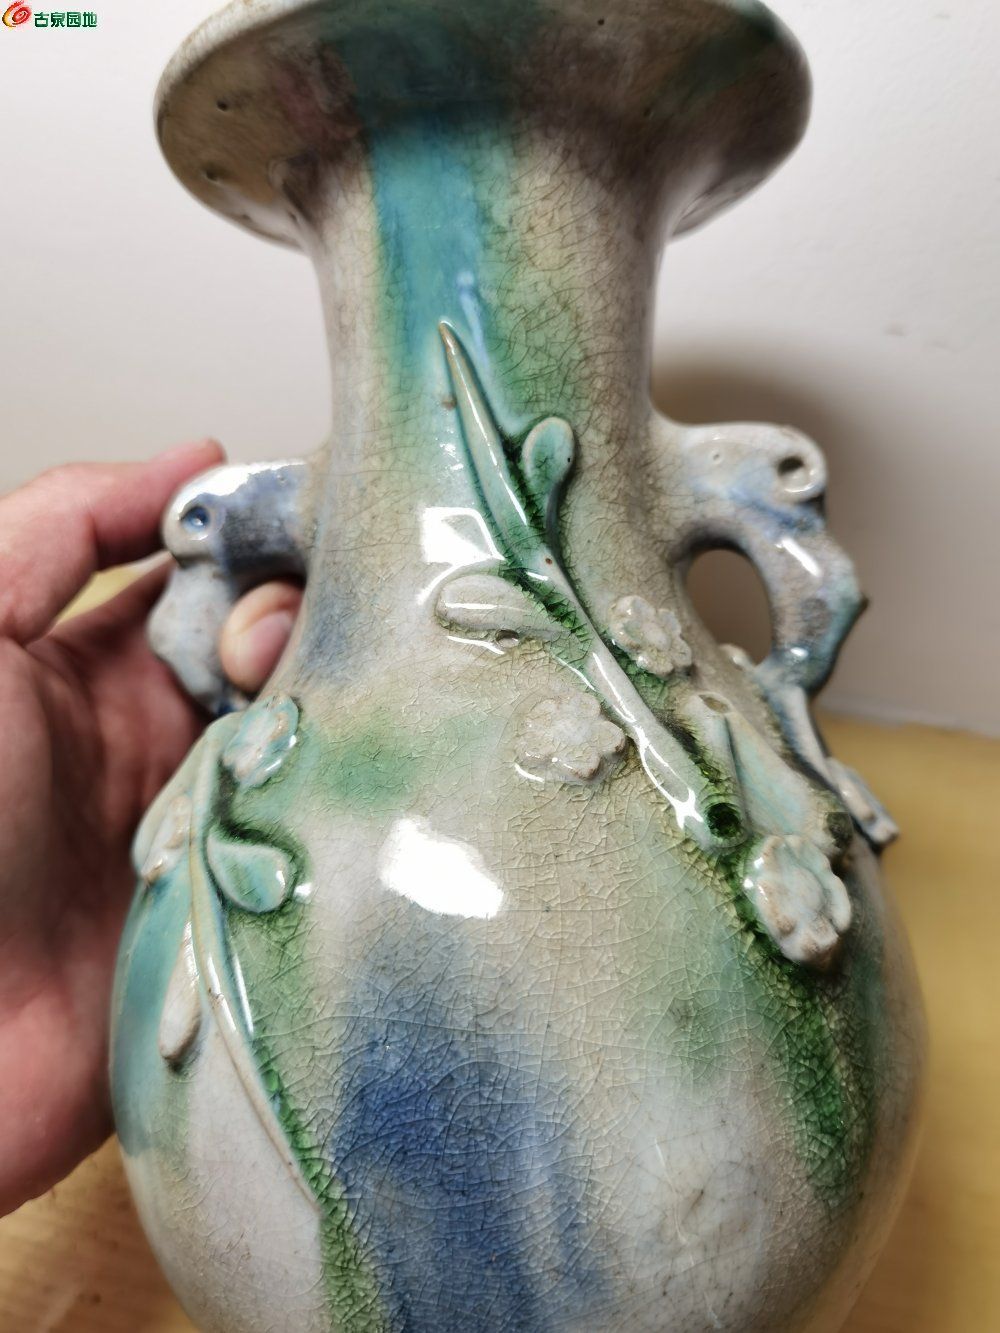 漂亮的清代石湾花瓶和水仙盆- 历代陶器瓷器- 古泉社区